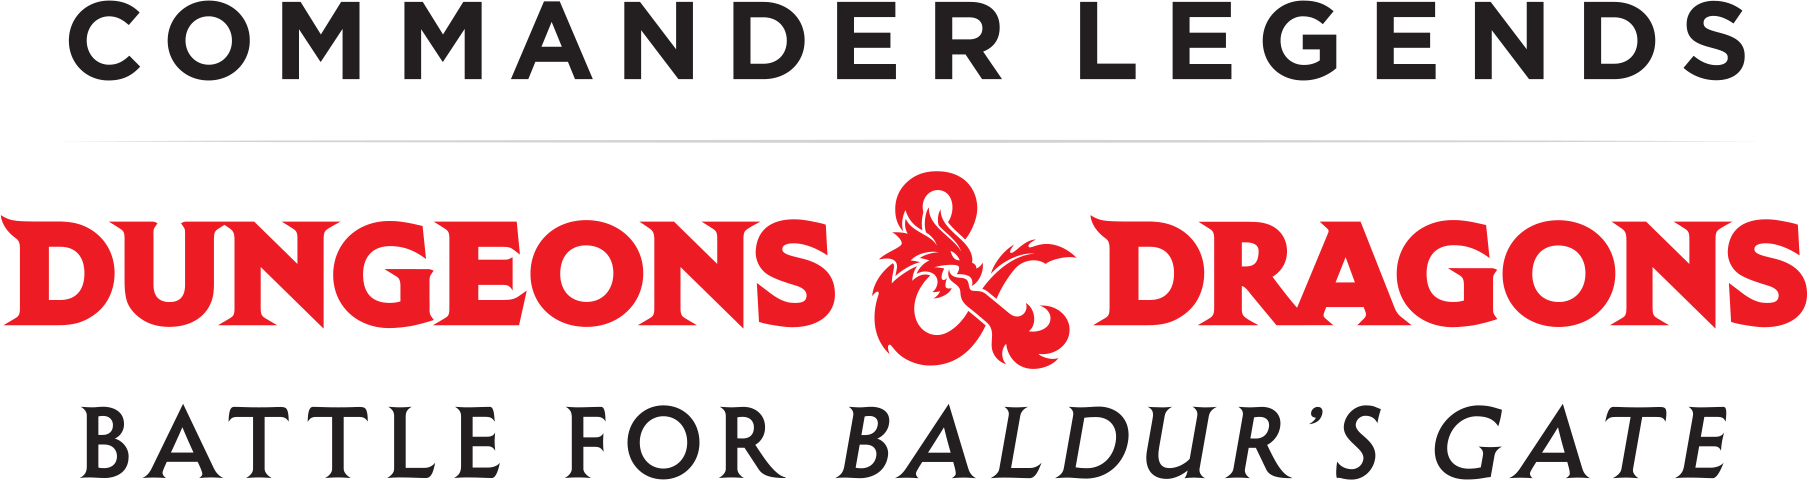 Commander Legends: Battle for Baldurs Gate logo